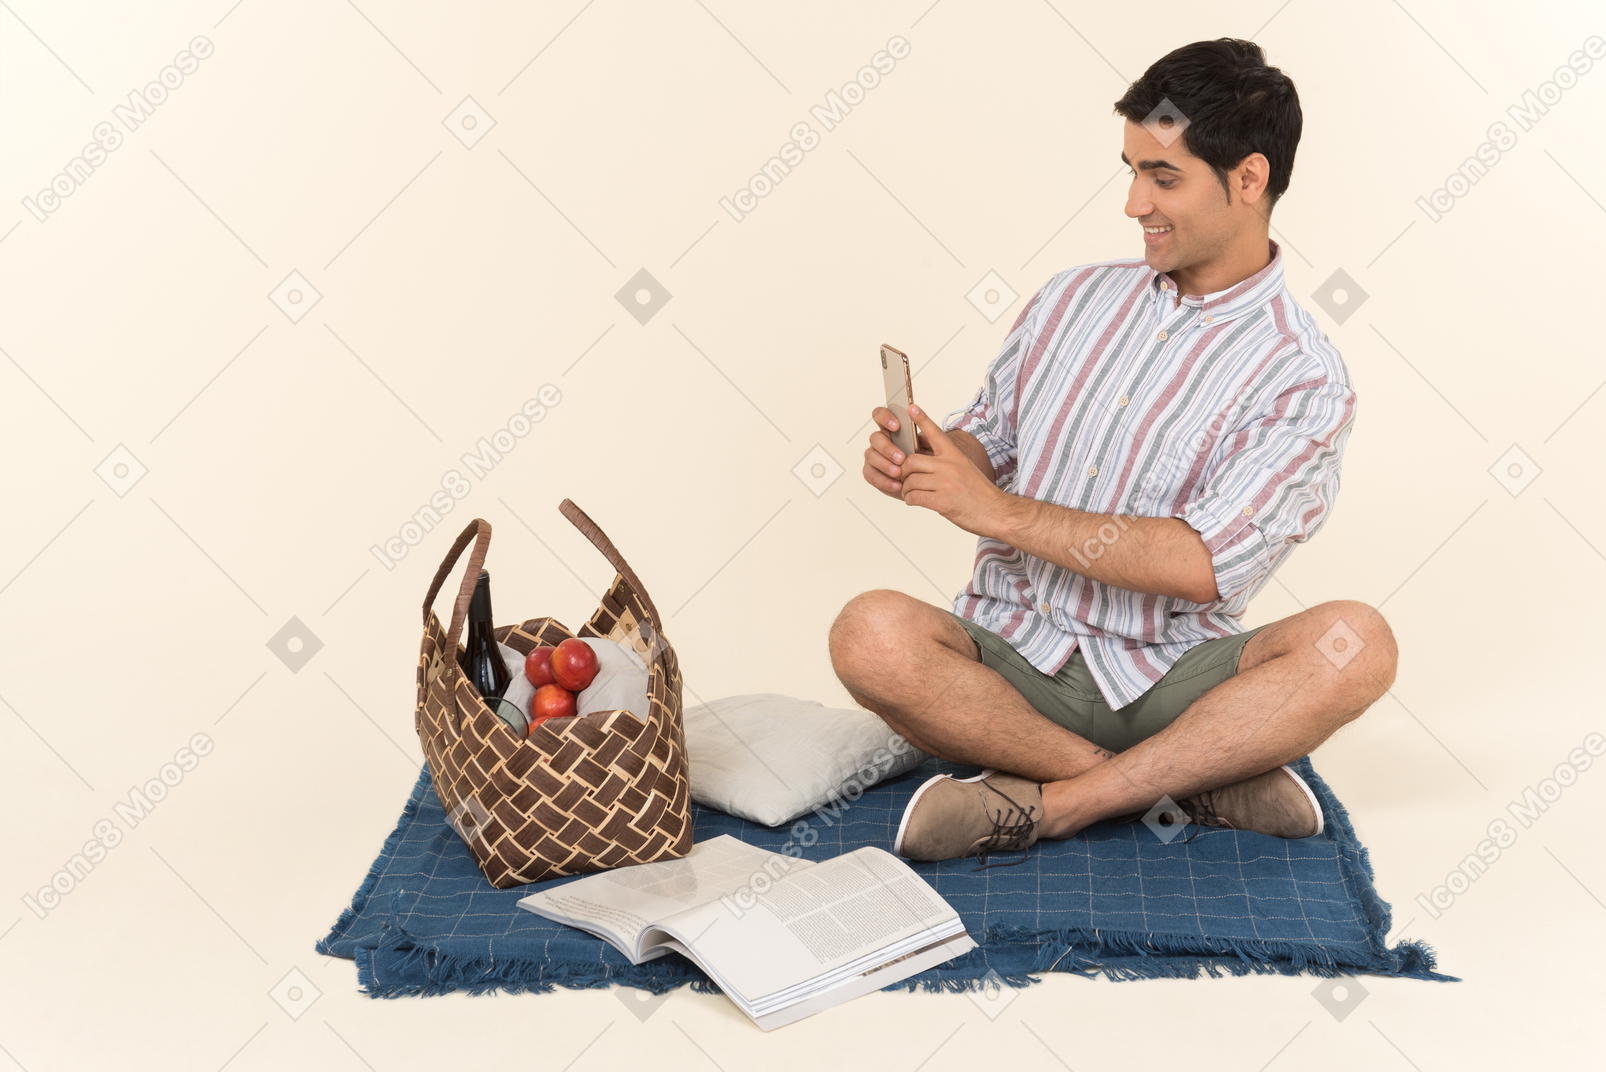 Chico caucásico joven sentado en una manta y haciendo una foto de la cesta de picnic